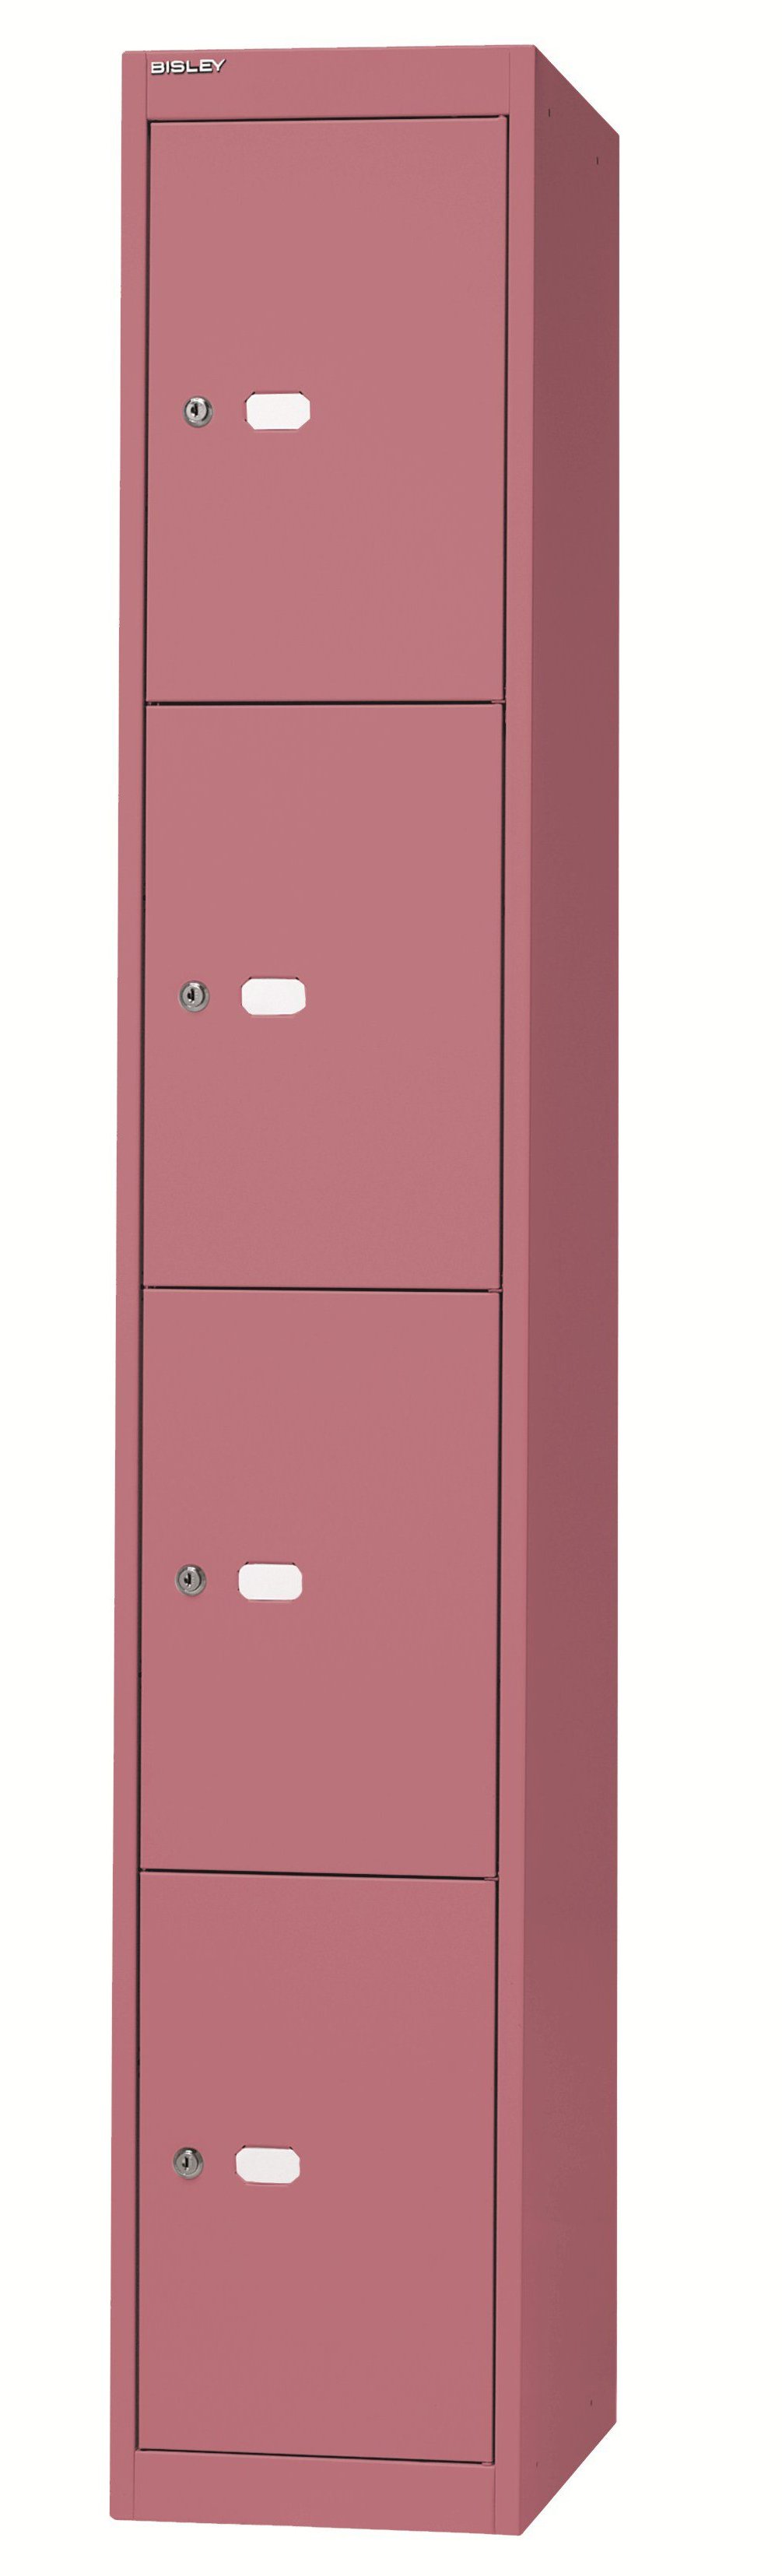 Wertsachen-Schließfachschrank pink lackiert